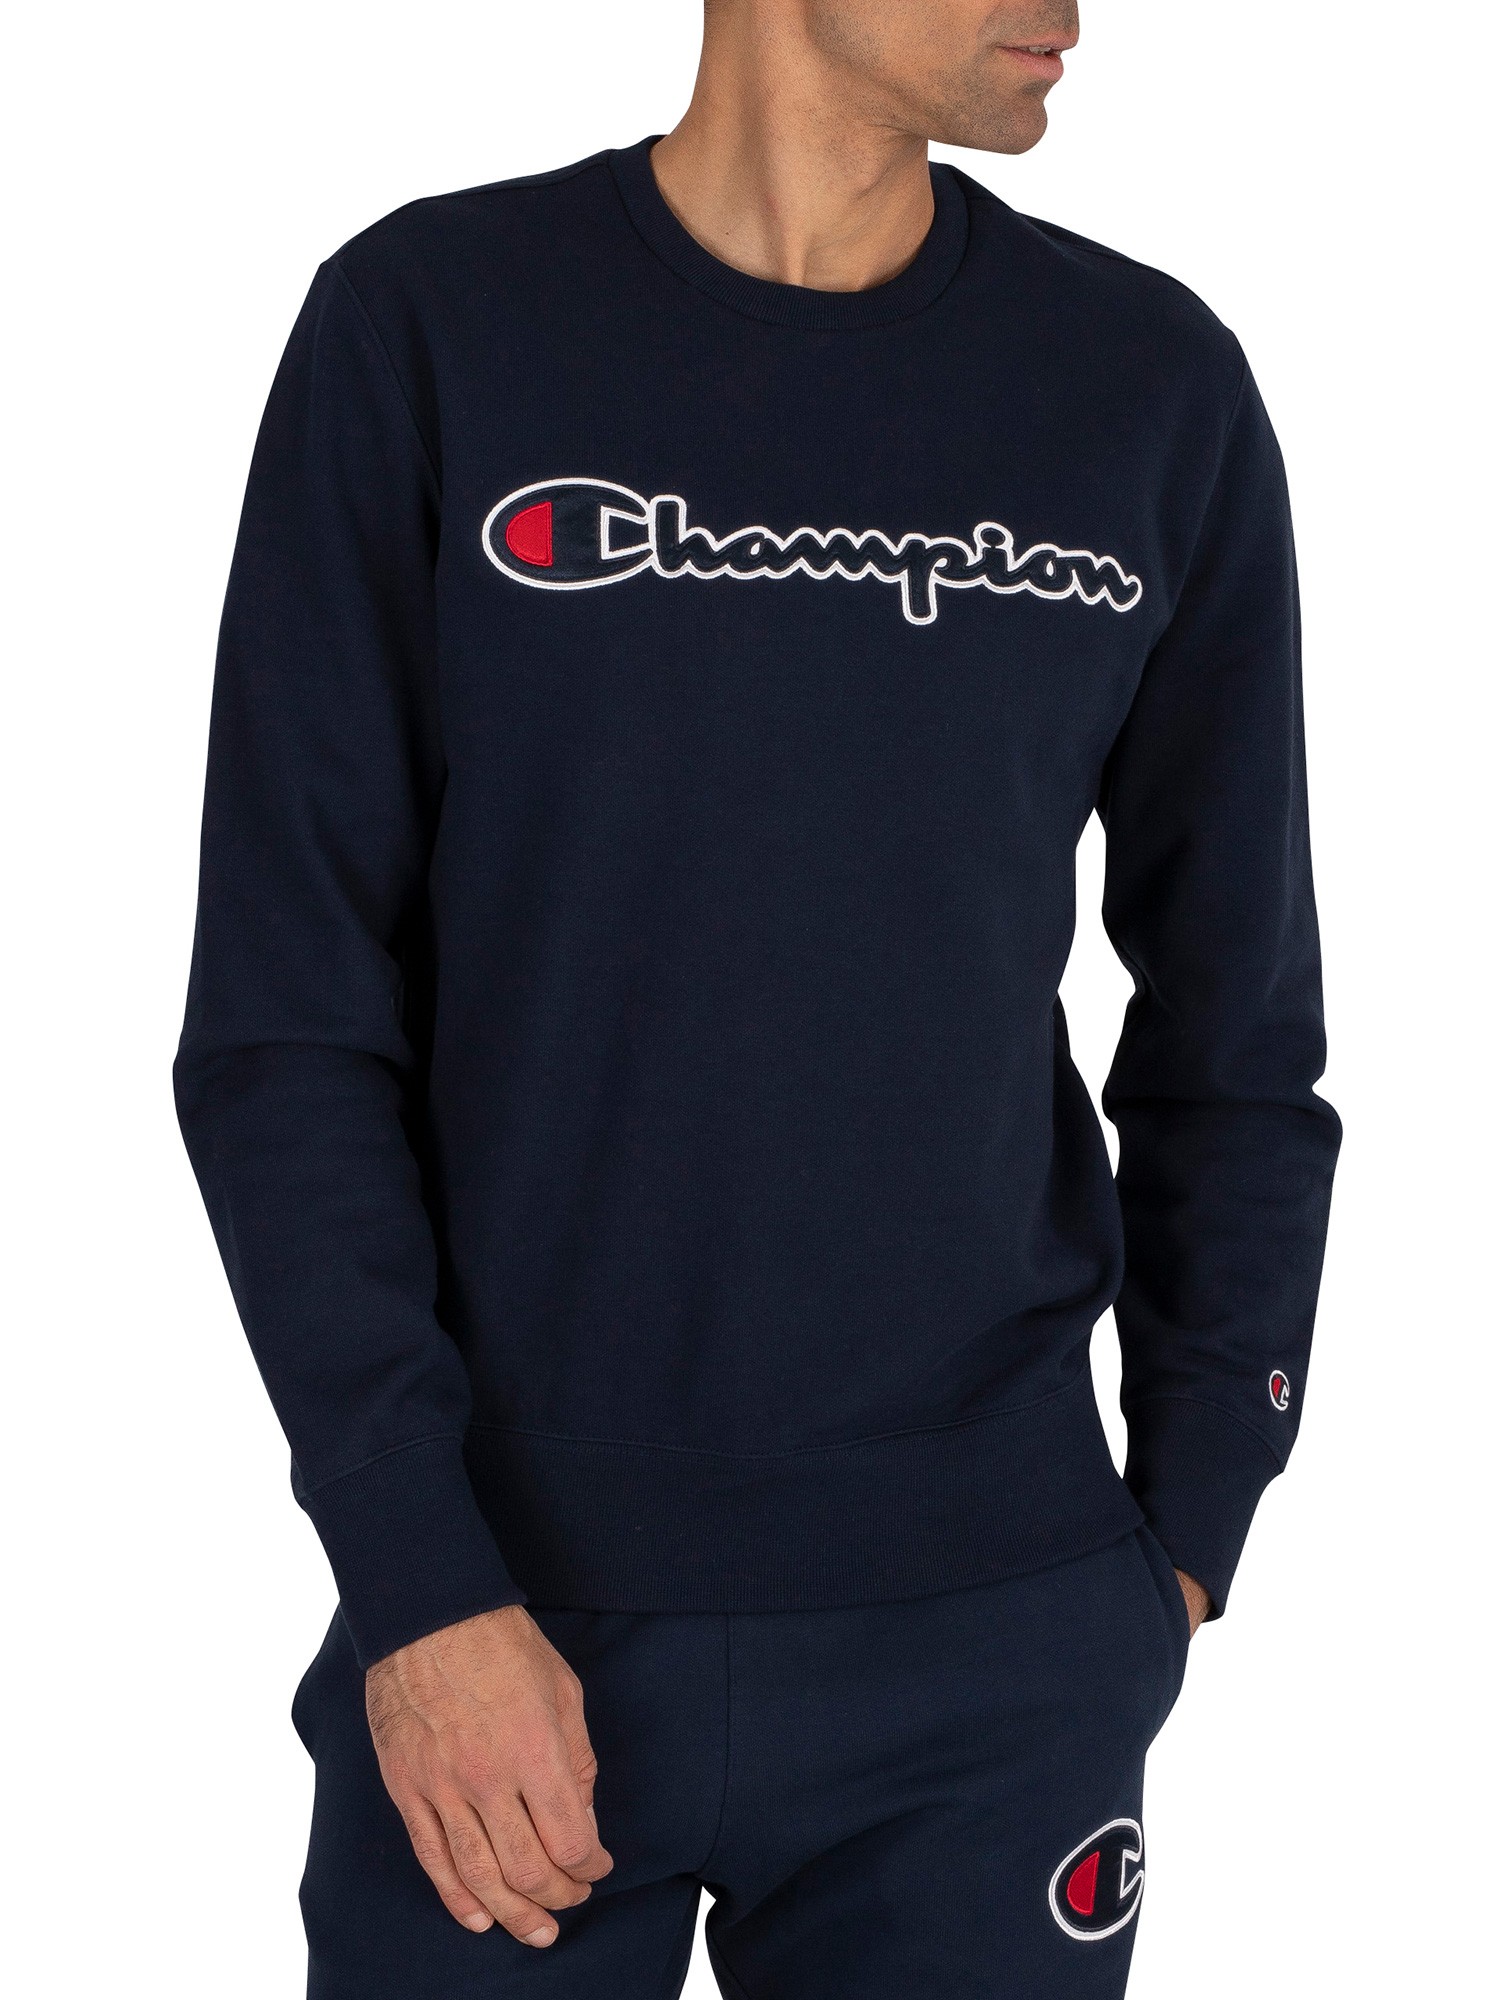 Champion Graphic Sweatshirt - Navy 